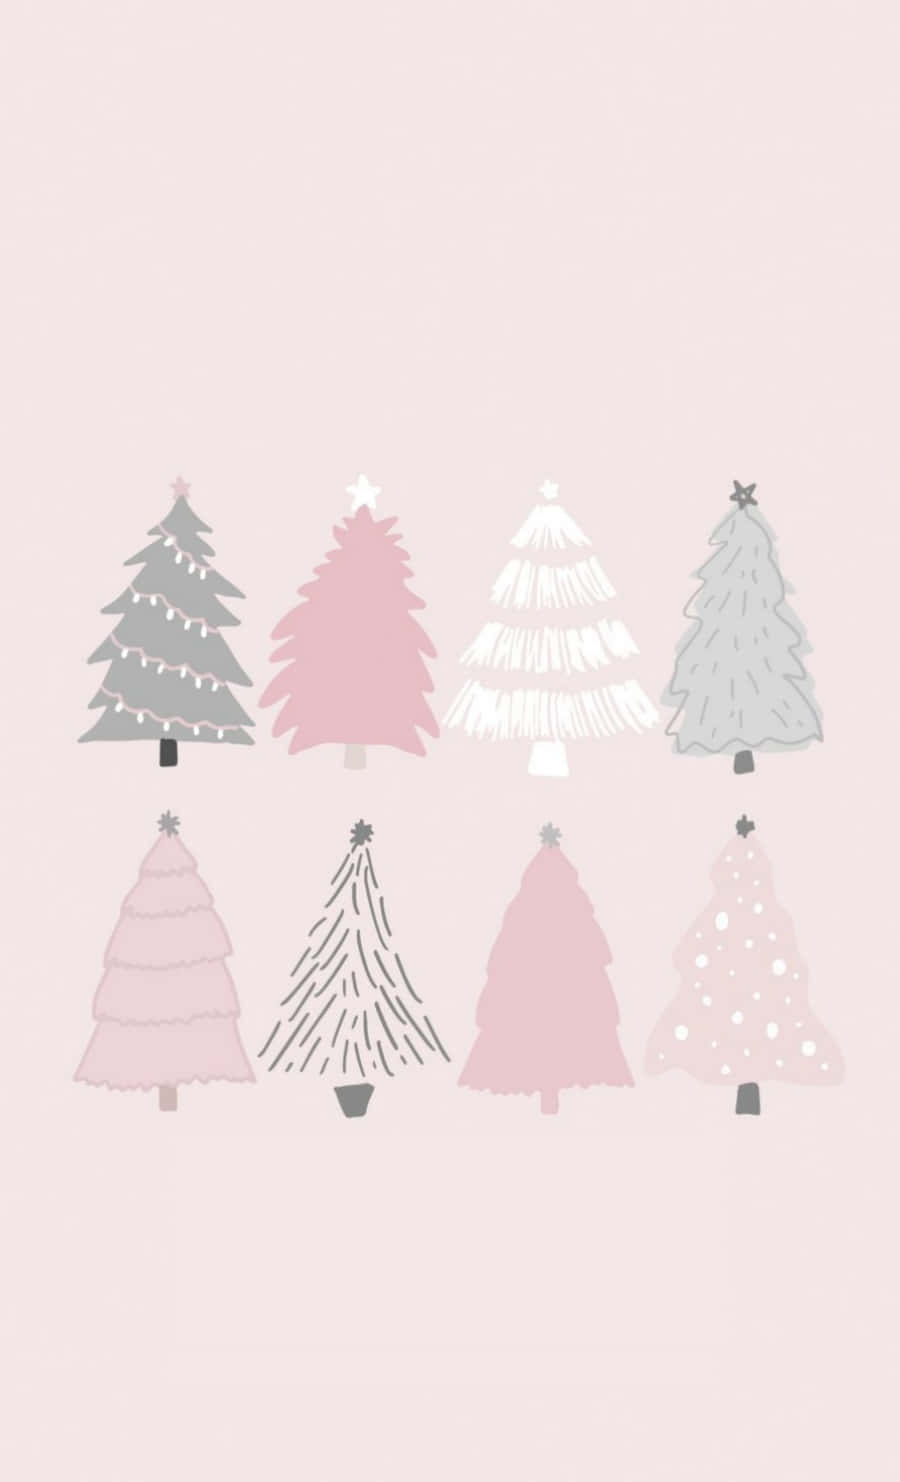 Árbolesde Navidad Coloridos De Tumblr Para Fondos De Pantalla De Computadora O Móvil. Fondo de pantalla